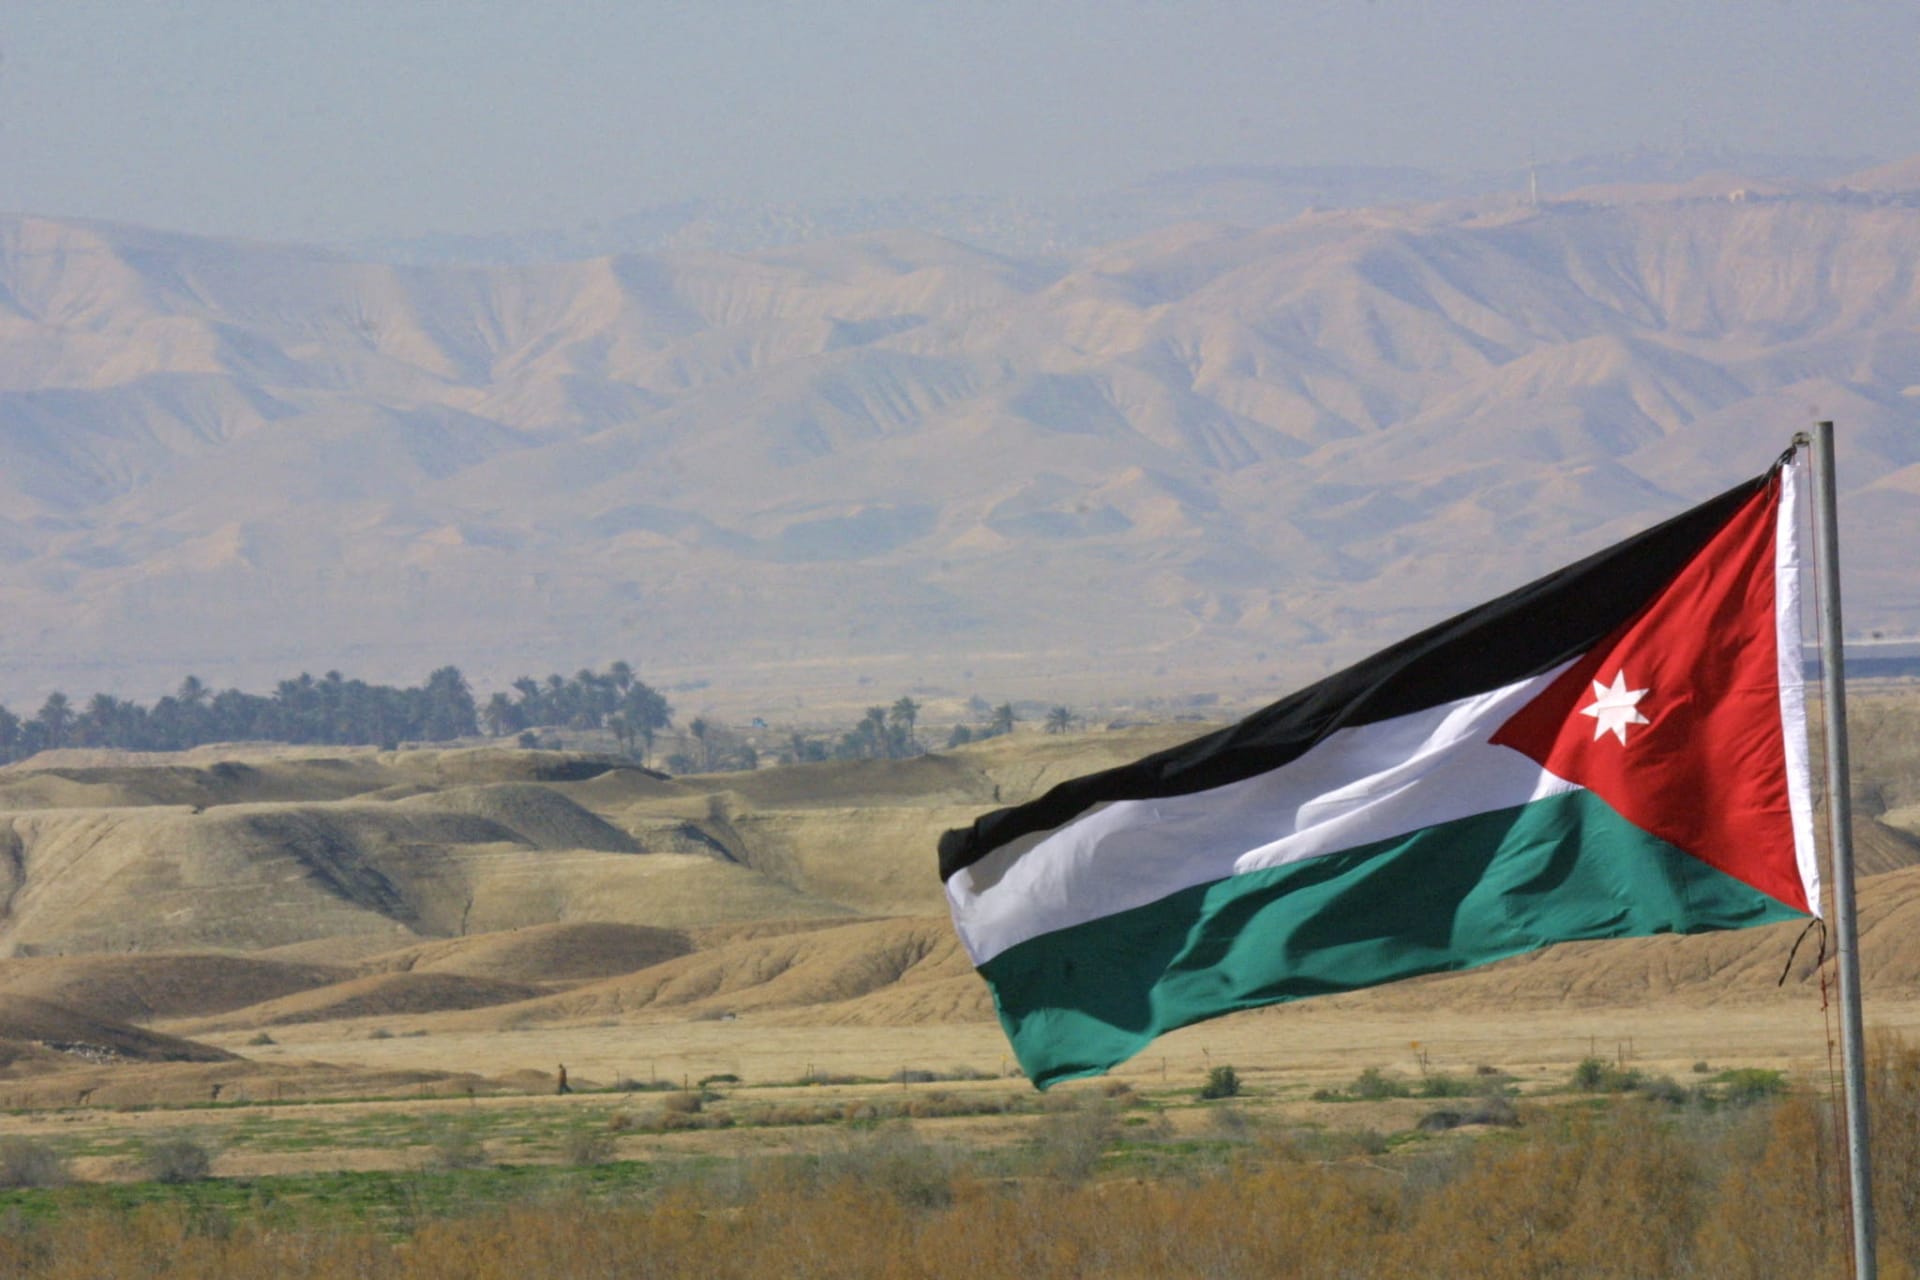 الأردن يُدين "الهجوم الإرهابي" الذي استهدف القاعدة الأمريكية في "موقع متقدم" على الحدود مع سوريا